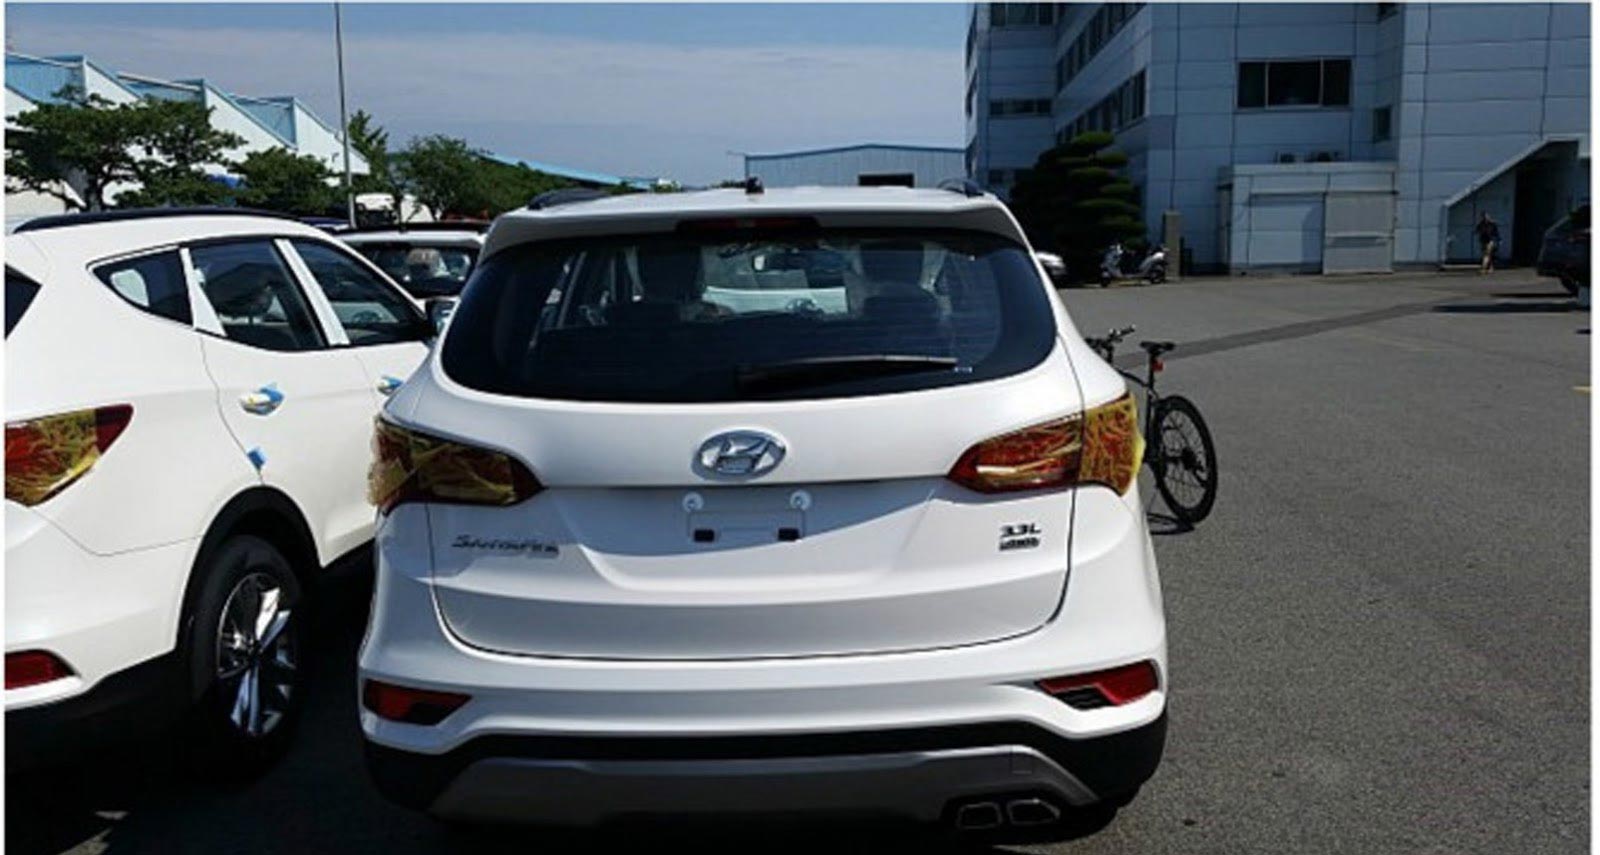 Berita, hyundai-santa-fe-facelift-belakang: Sosok Hyundai Santa Fe Facelift 2016 Tertangkap Kamera Tanpa Penyamaran